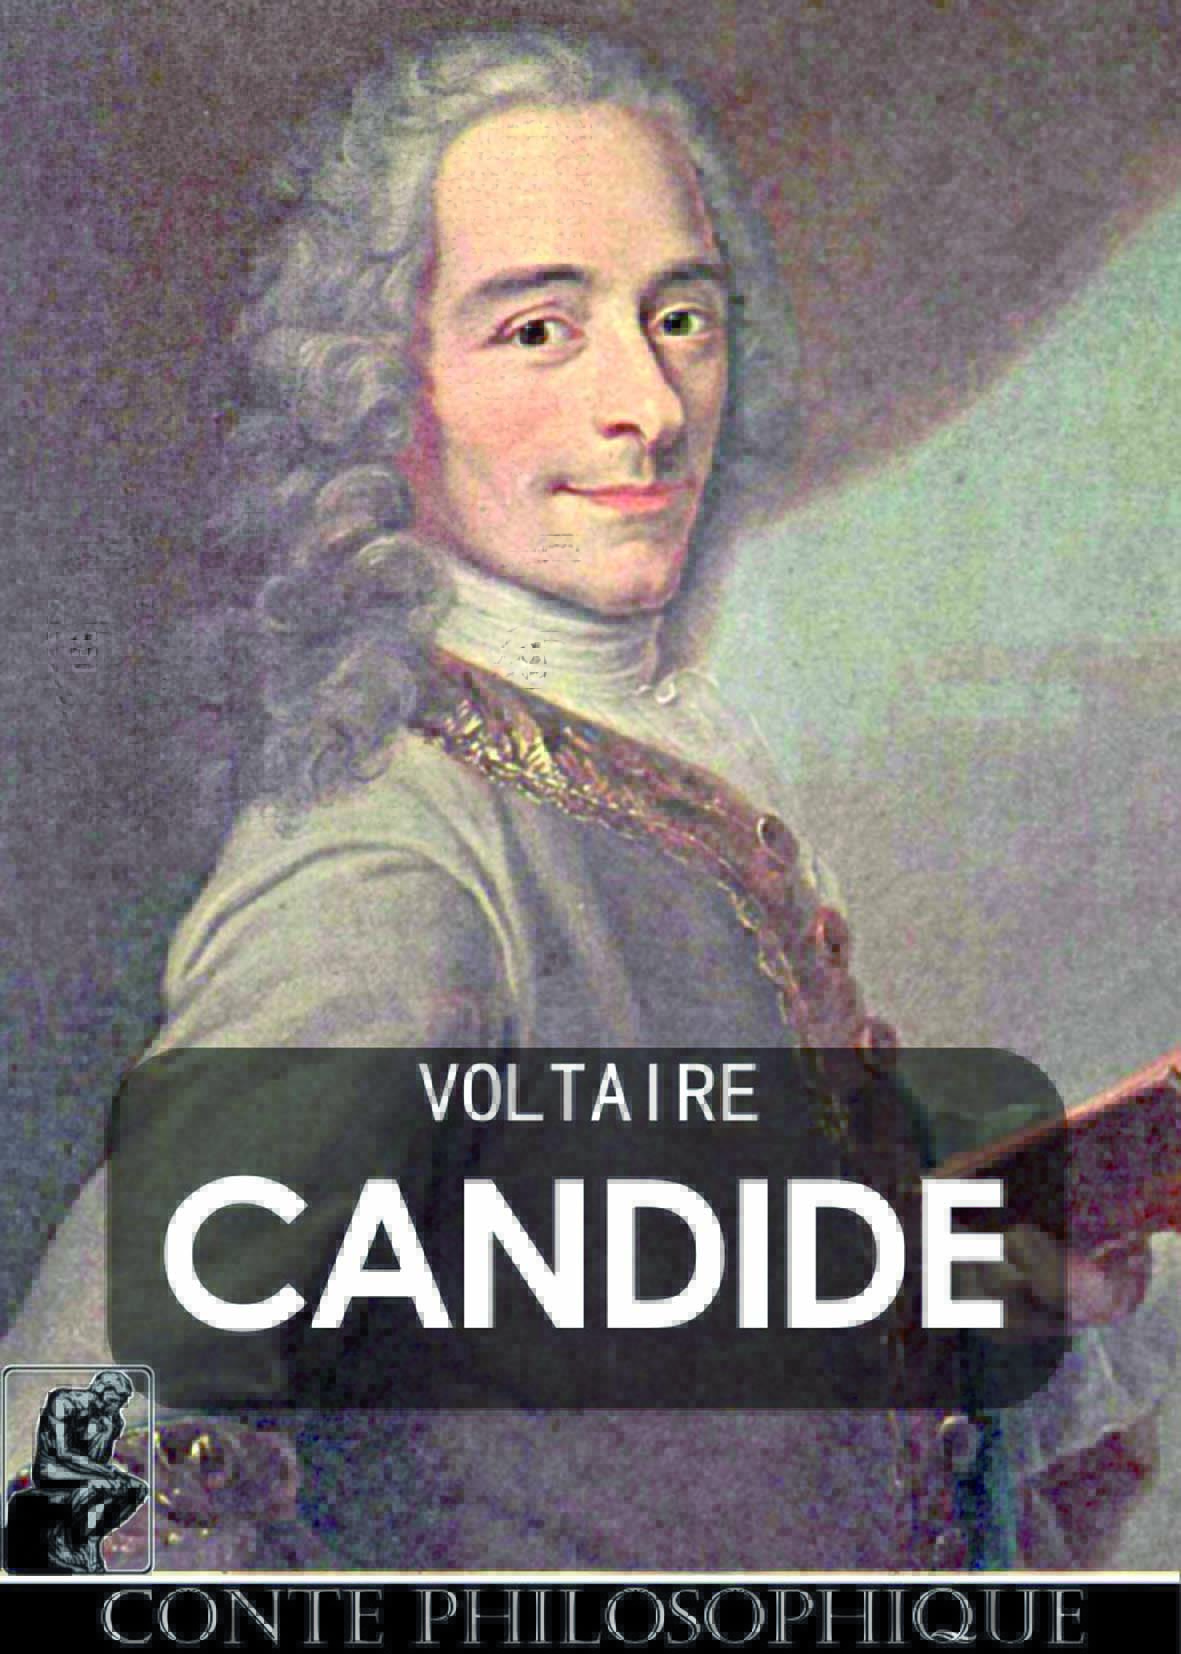 Heureux qui, comme l’élève marocain, a lu Voltaire